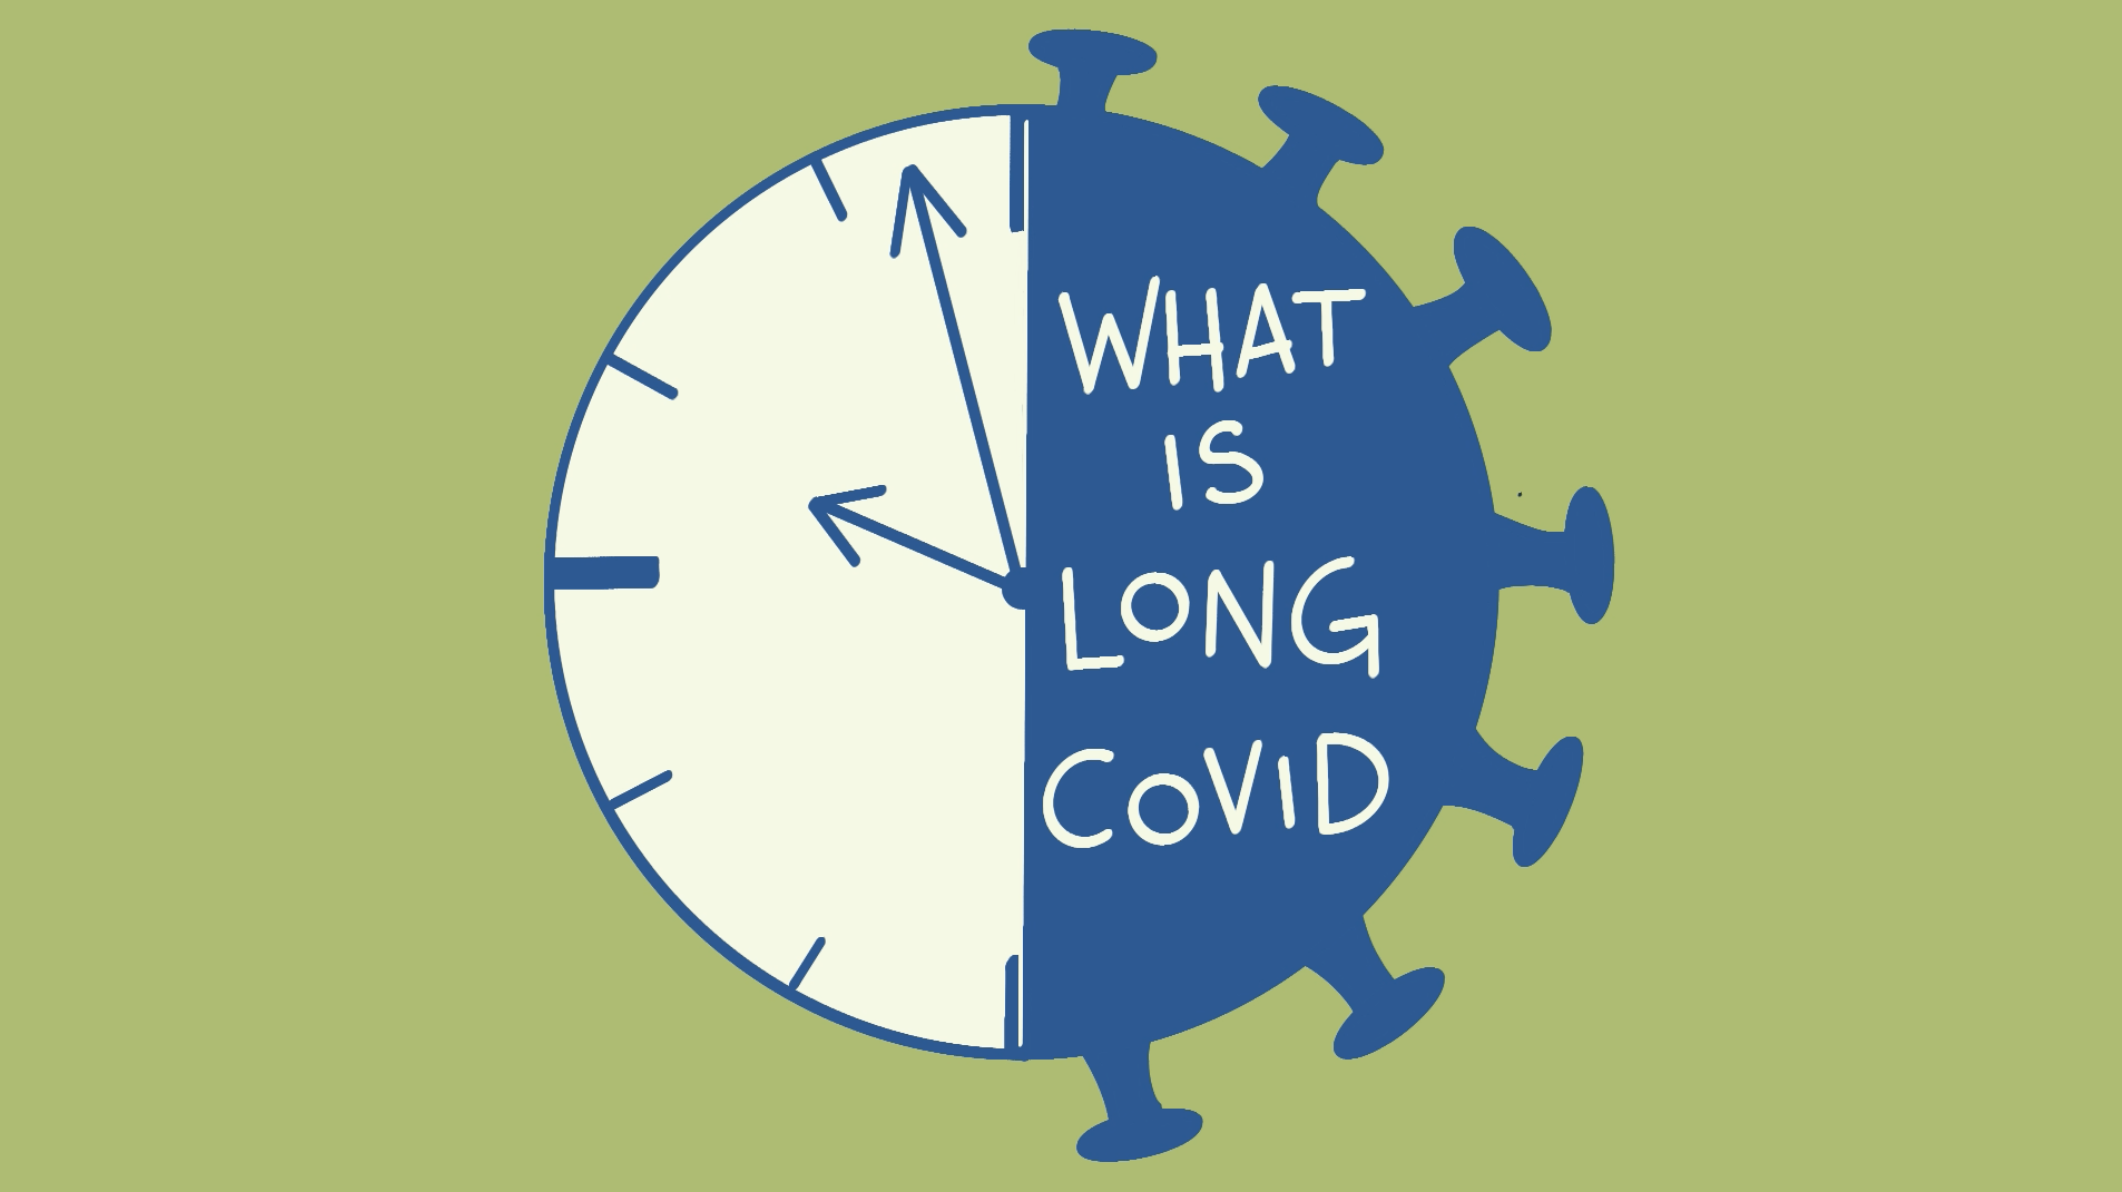 O que é COVID Longa?